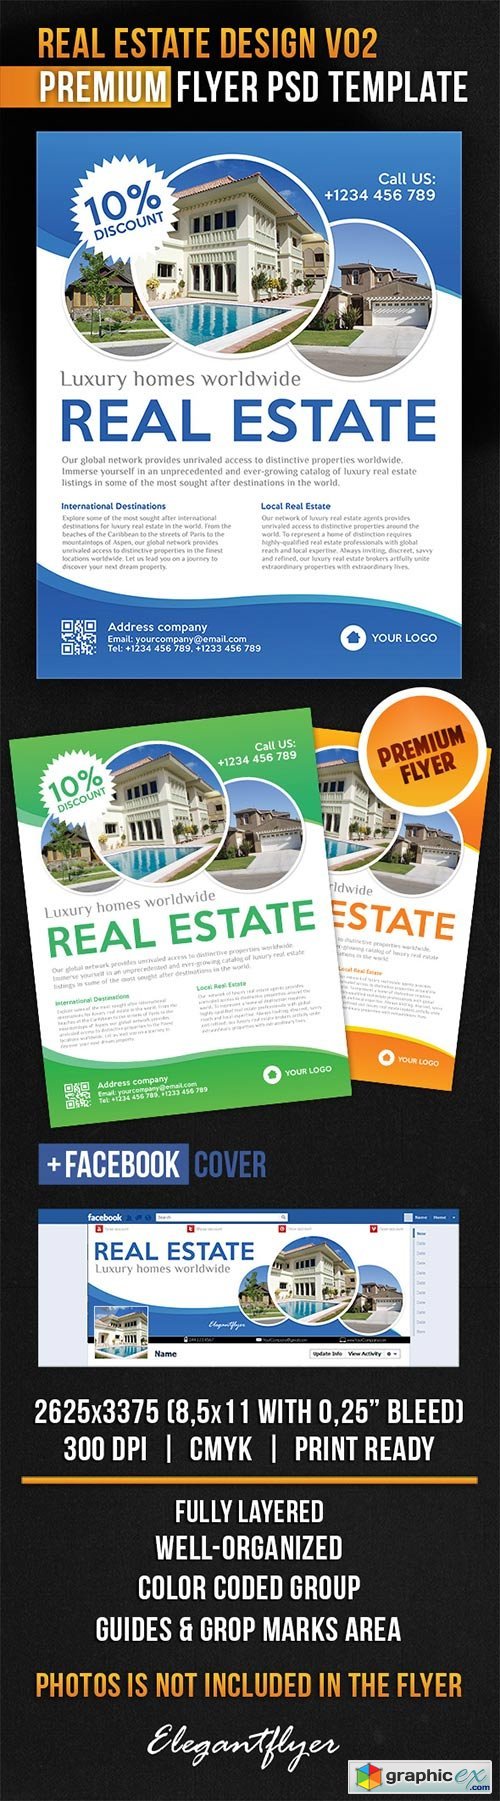 Real Estate Design V02 Flyer PSD Template + Facebook Cover